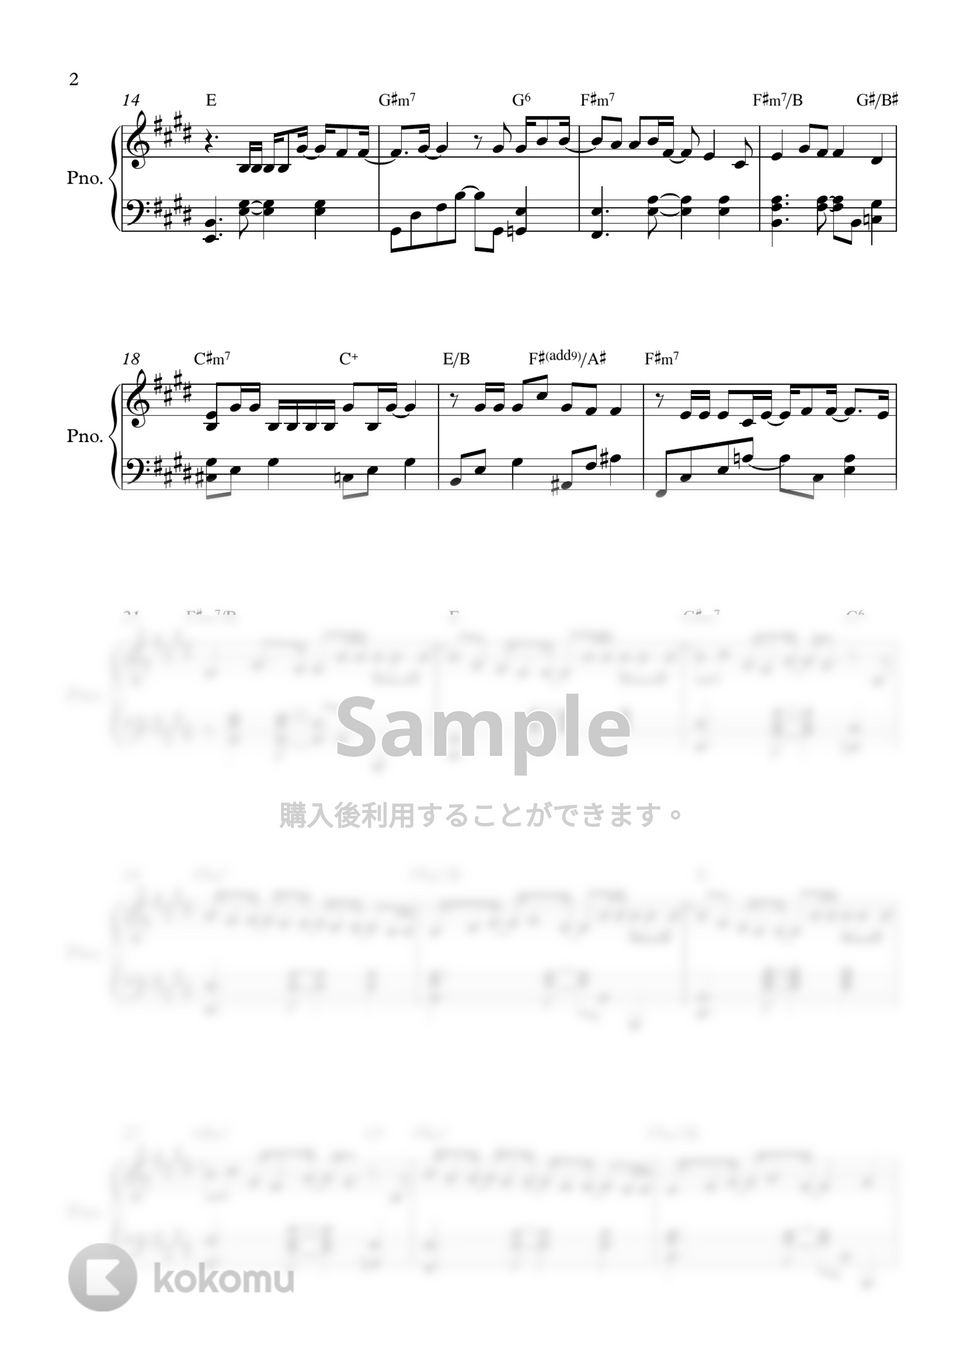 ギョンソ - 告白の練習 (CHECKLIST) by PIANOiNU